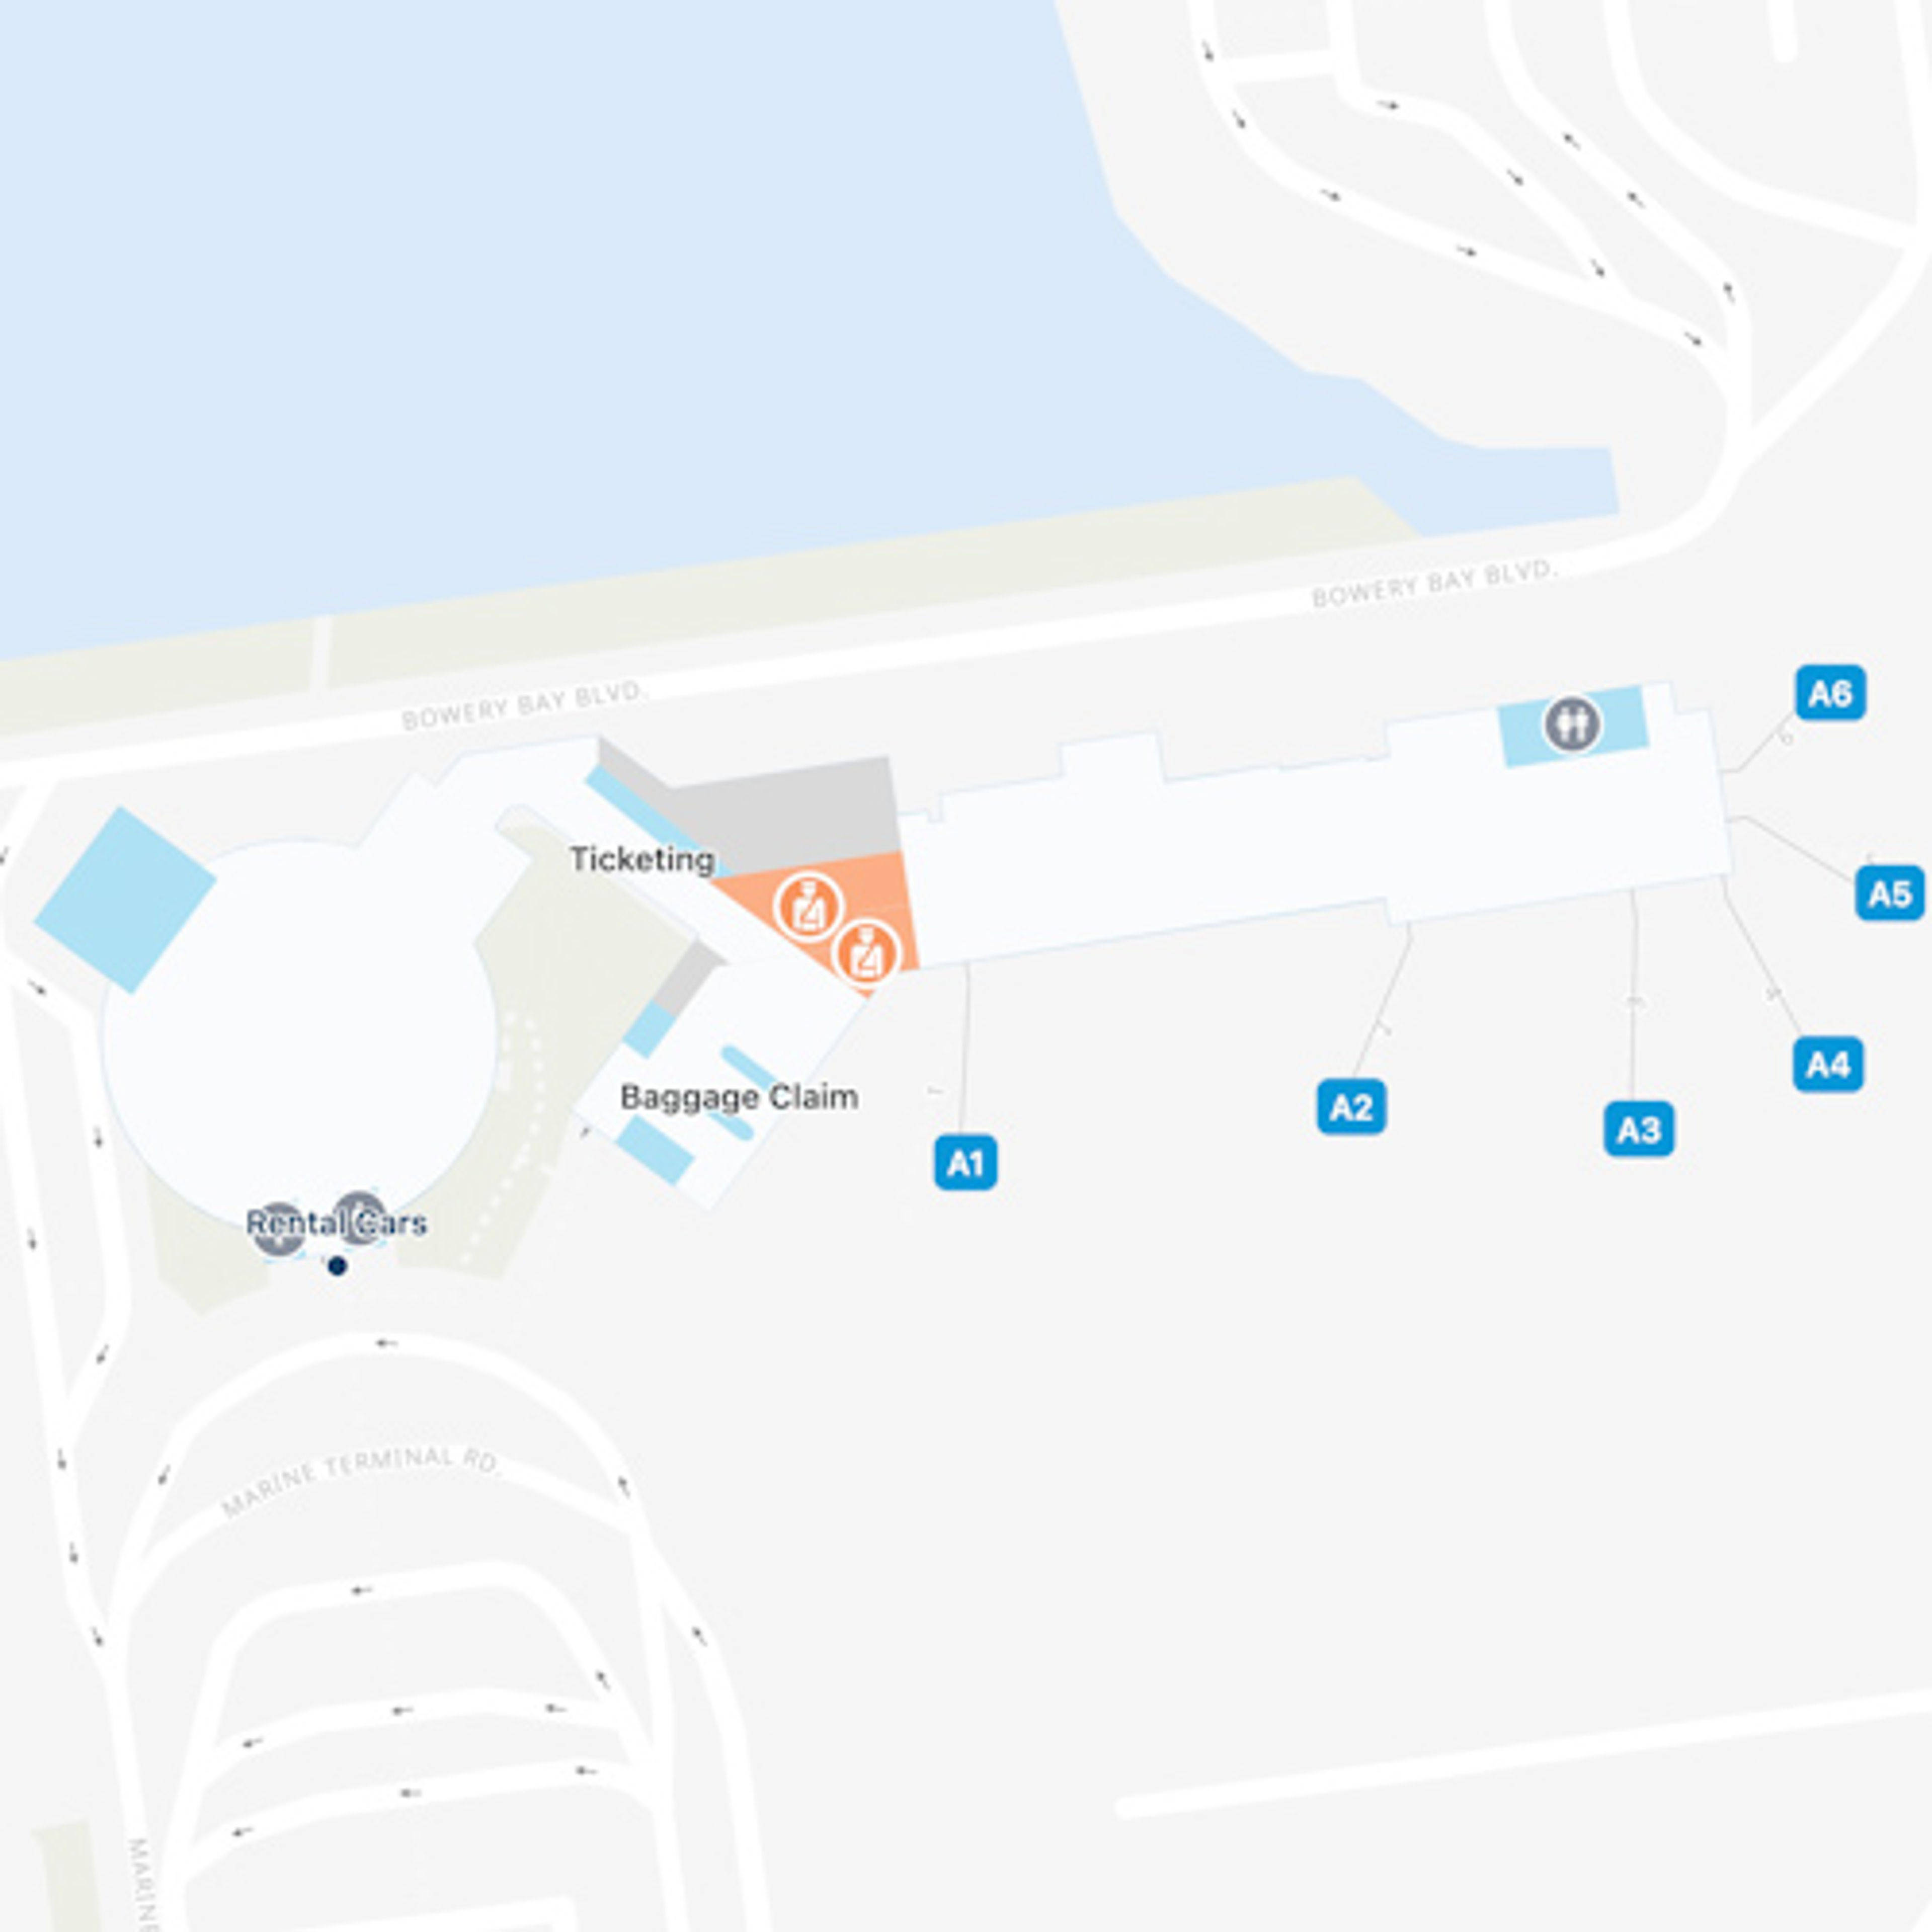 LGA Terminal A Map